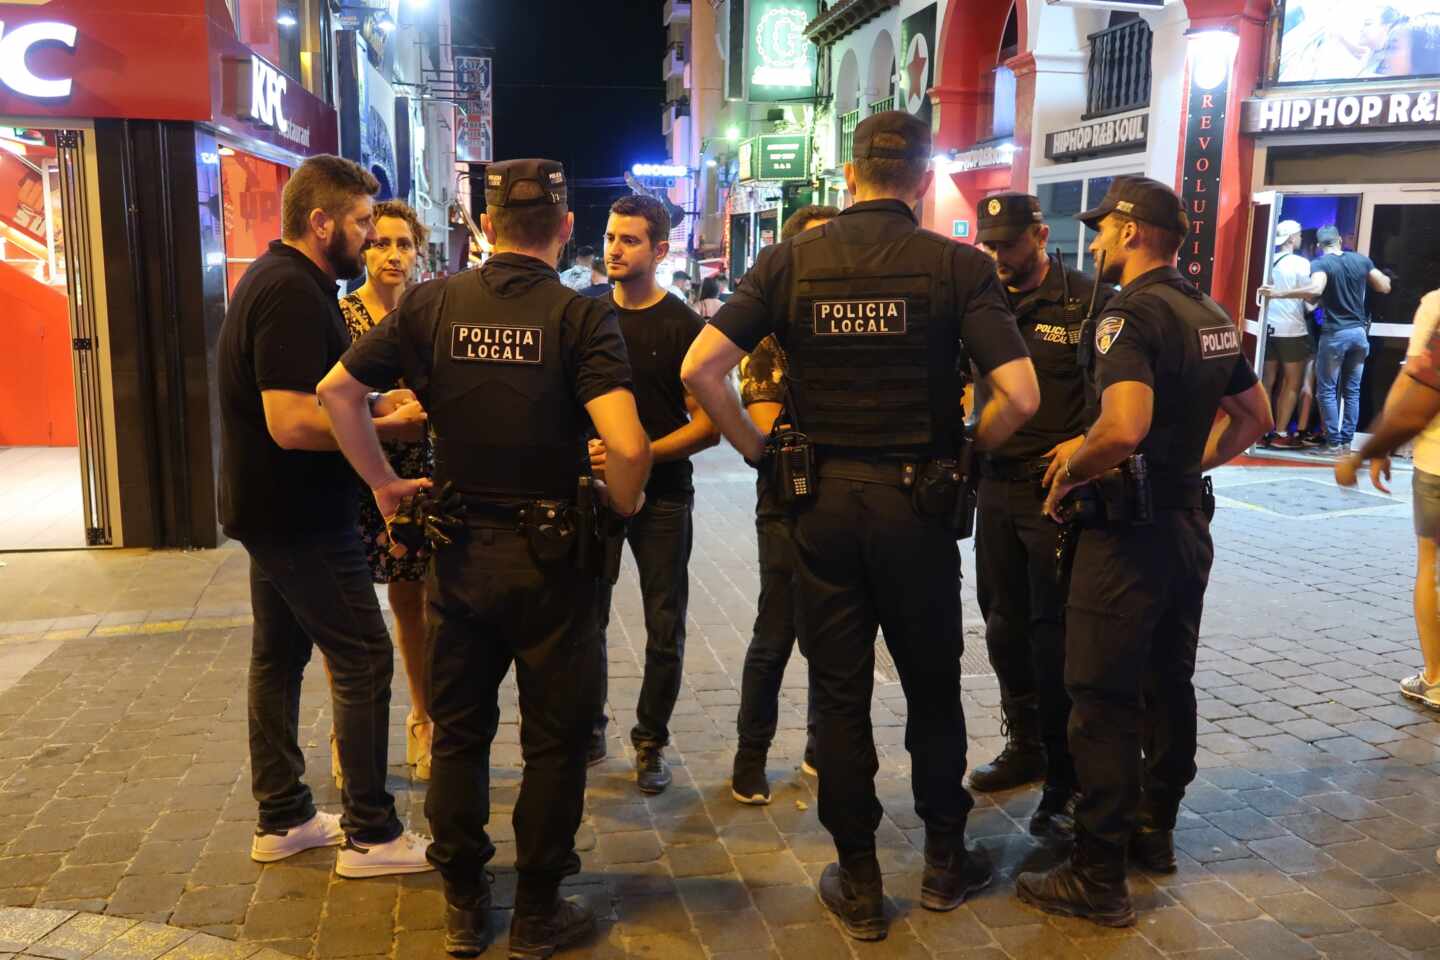 La policía irrumpe una fiesta de 100 personas en Ibiza